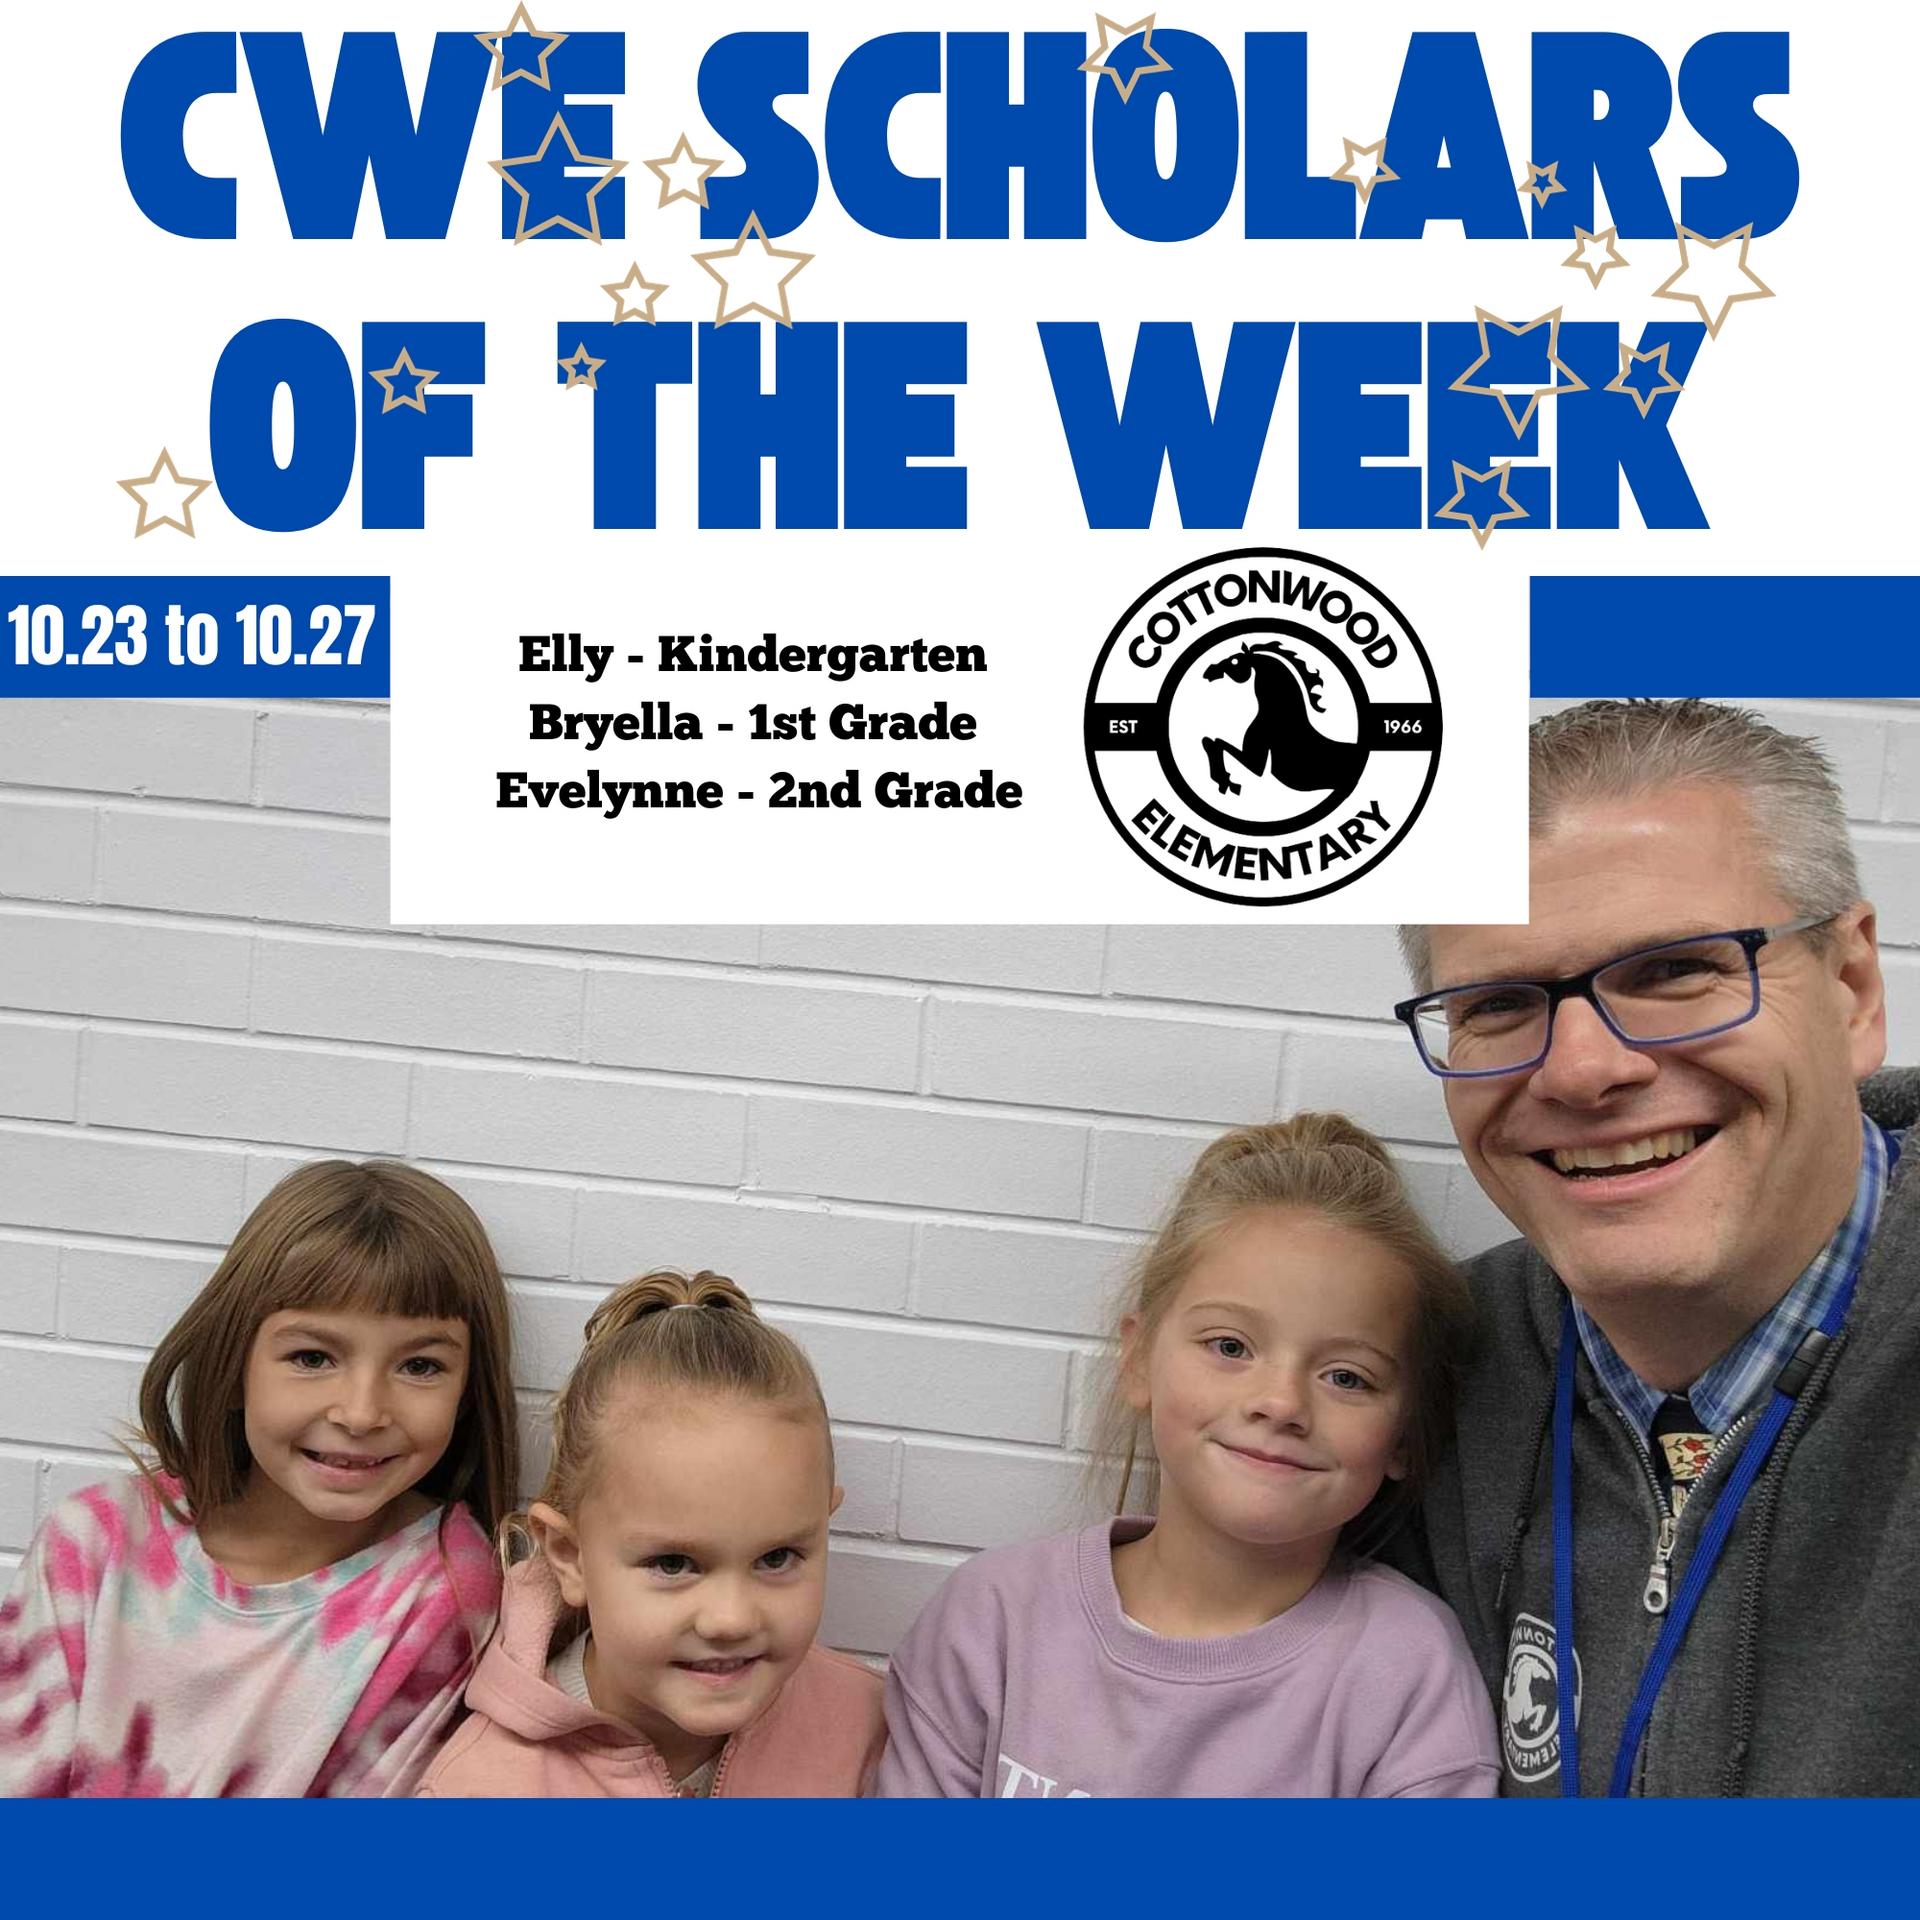 CWE-Scholars-of-the-Week-10.23-to-10.27.jpg